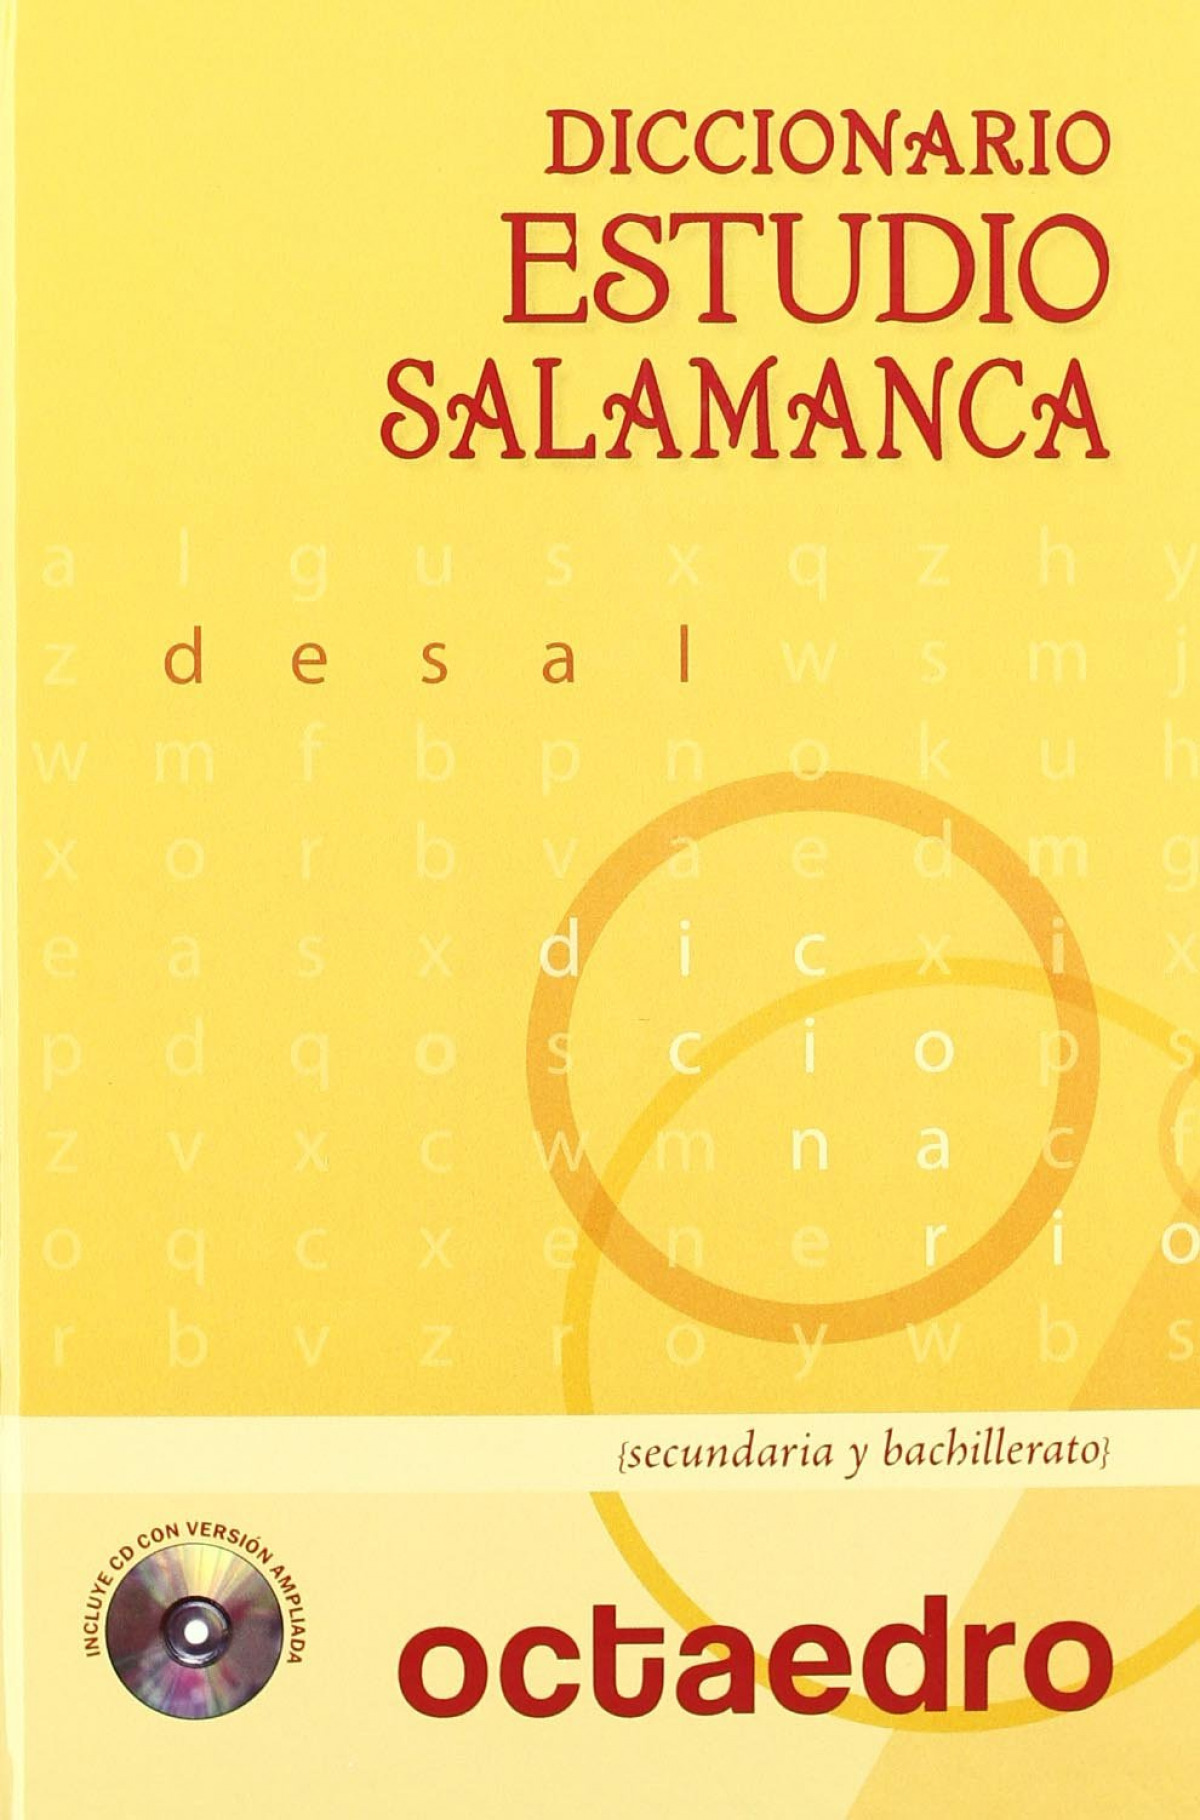 Diccionario Estudio Salamanca Desal. Un diccionaro para aprender. Secu - Sanchez Muñoz, Trinidad/Herrero Ingelmo, José Luis/Atilano Figal, Lucas